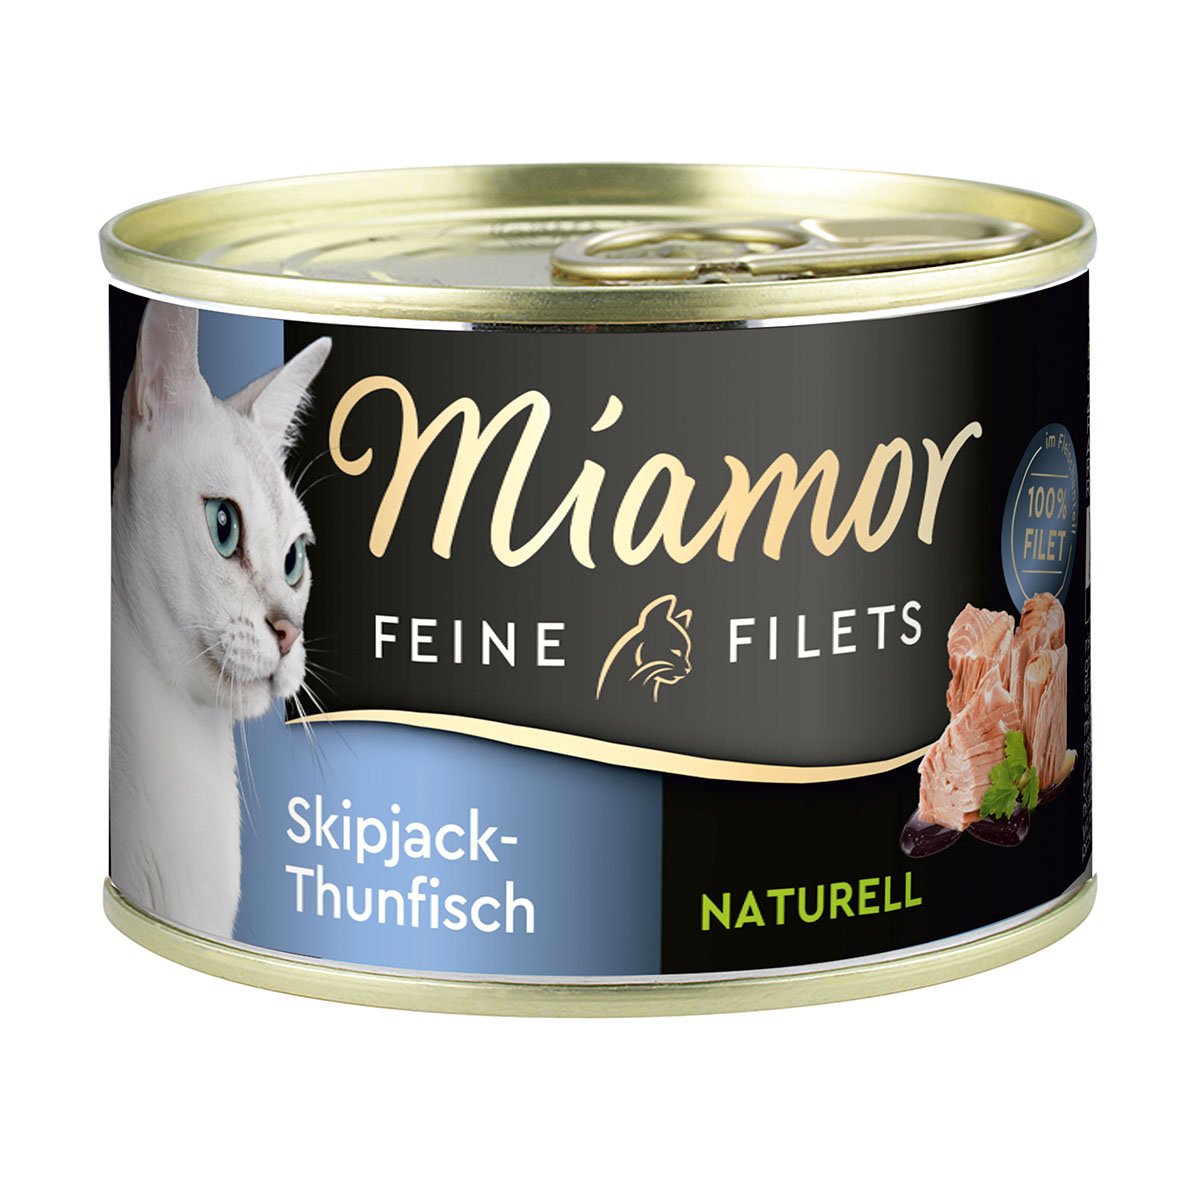 Miamor Feine Filets Naturelle Skipjack-Thunfisch 156g Dose 12x156g von Miamor